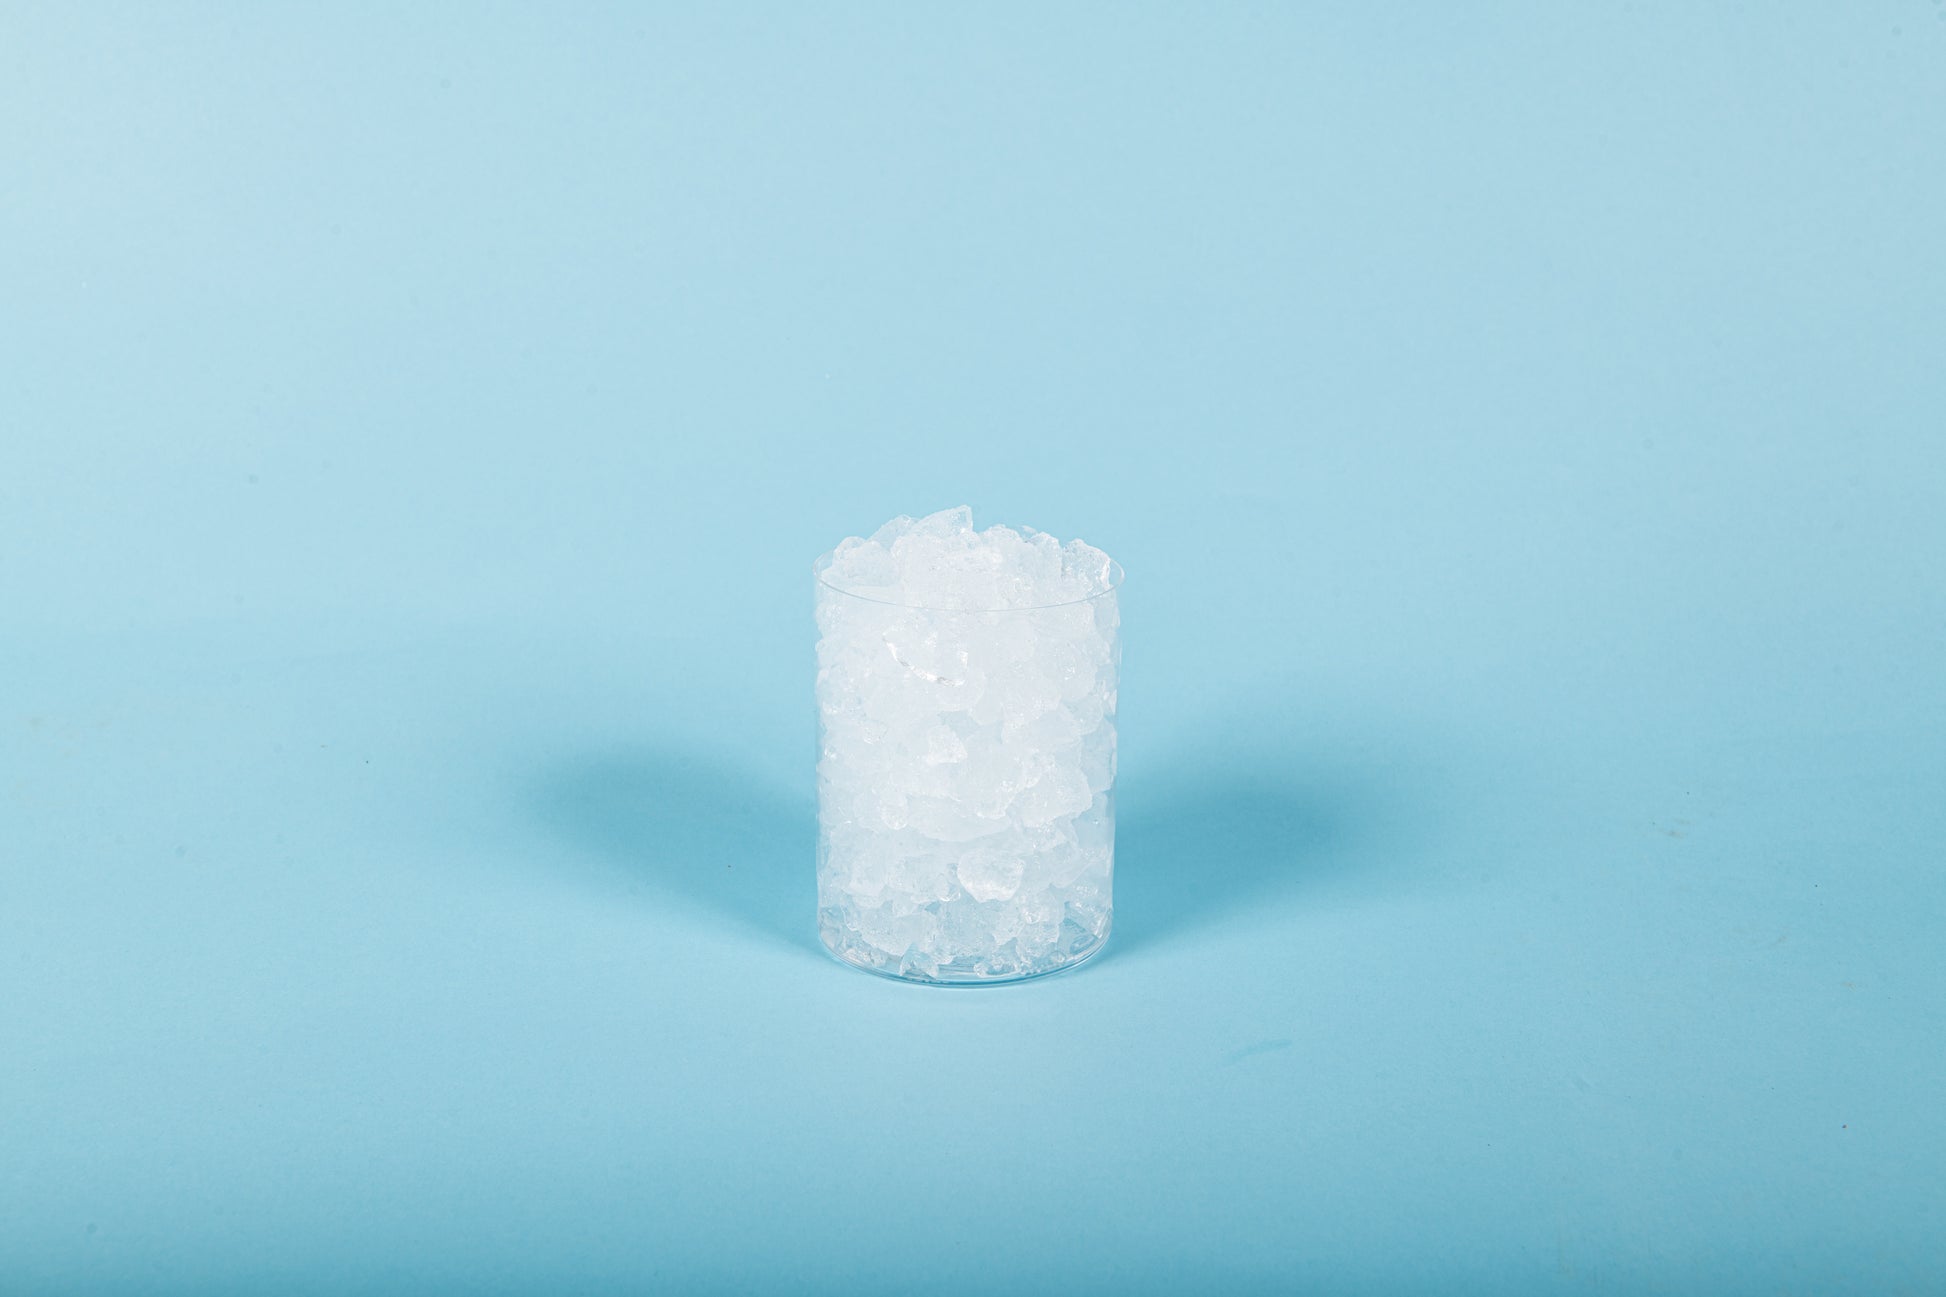 10 kg krossad is i säck - Isbudet - 